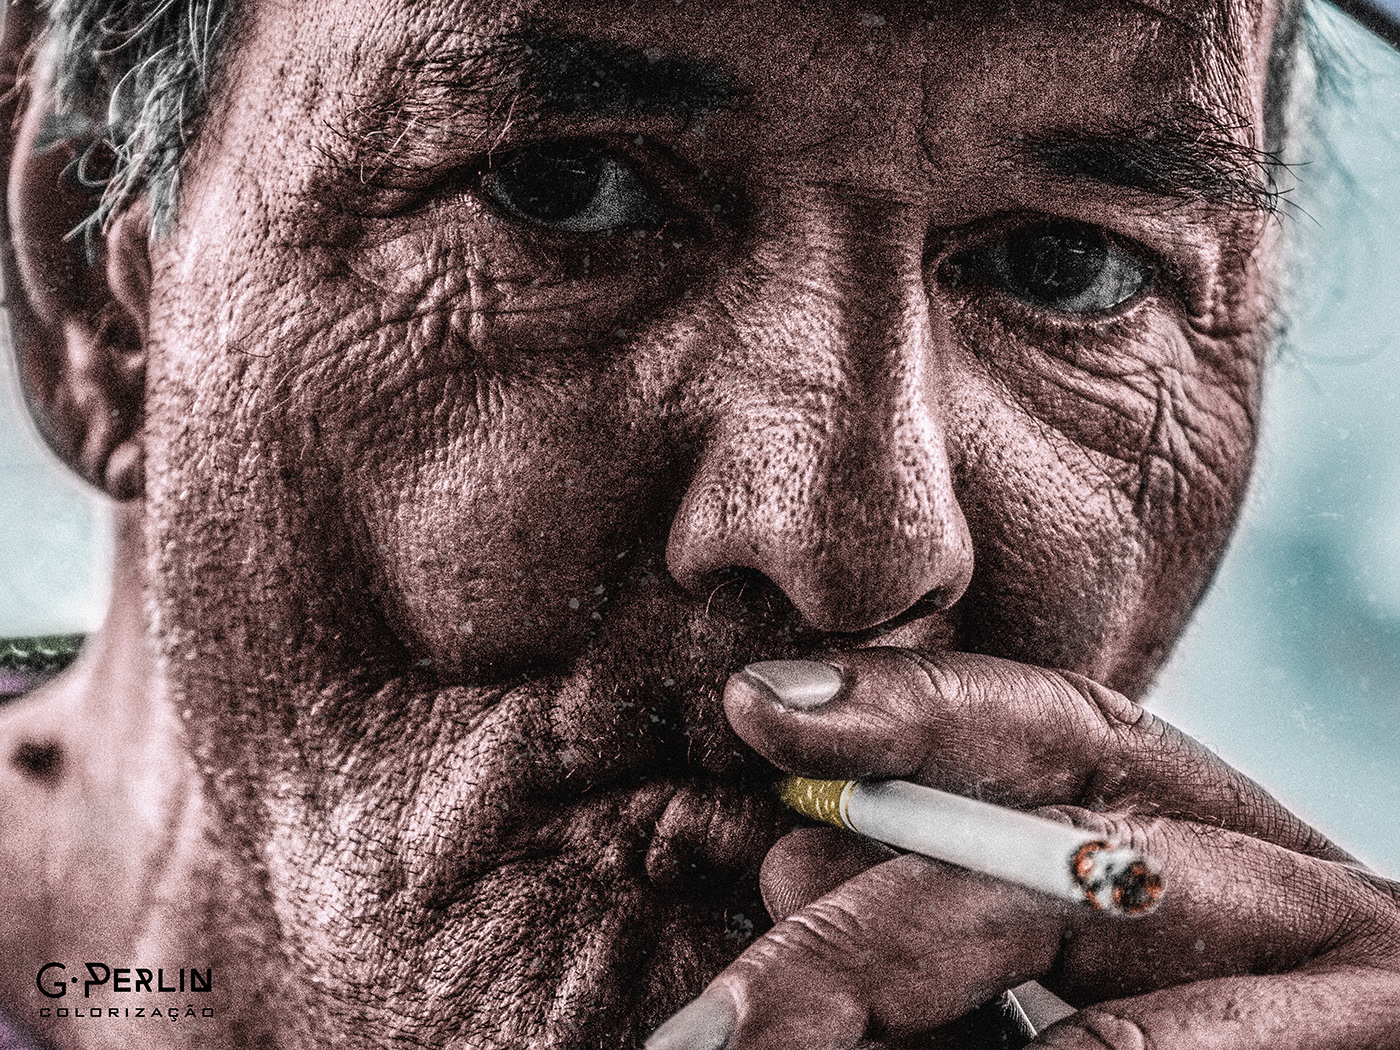 Cigarro colorir colorização foto Fotografia pito preto e branco preto e cinza senhor fumando